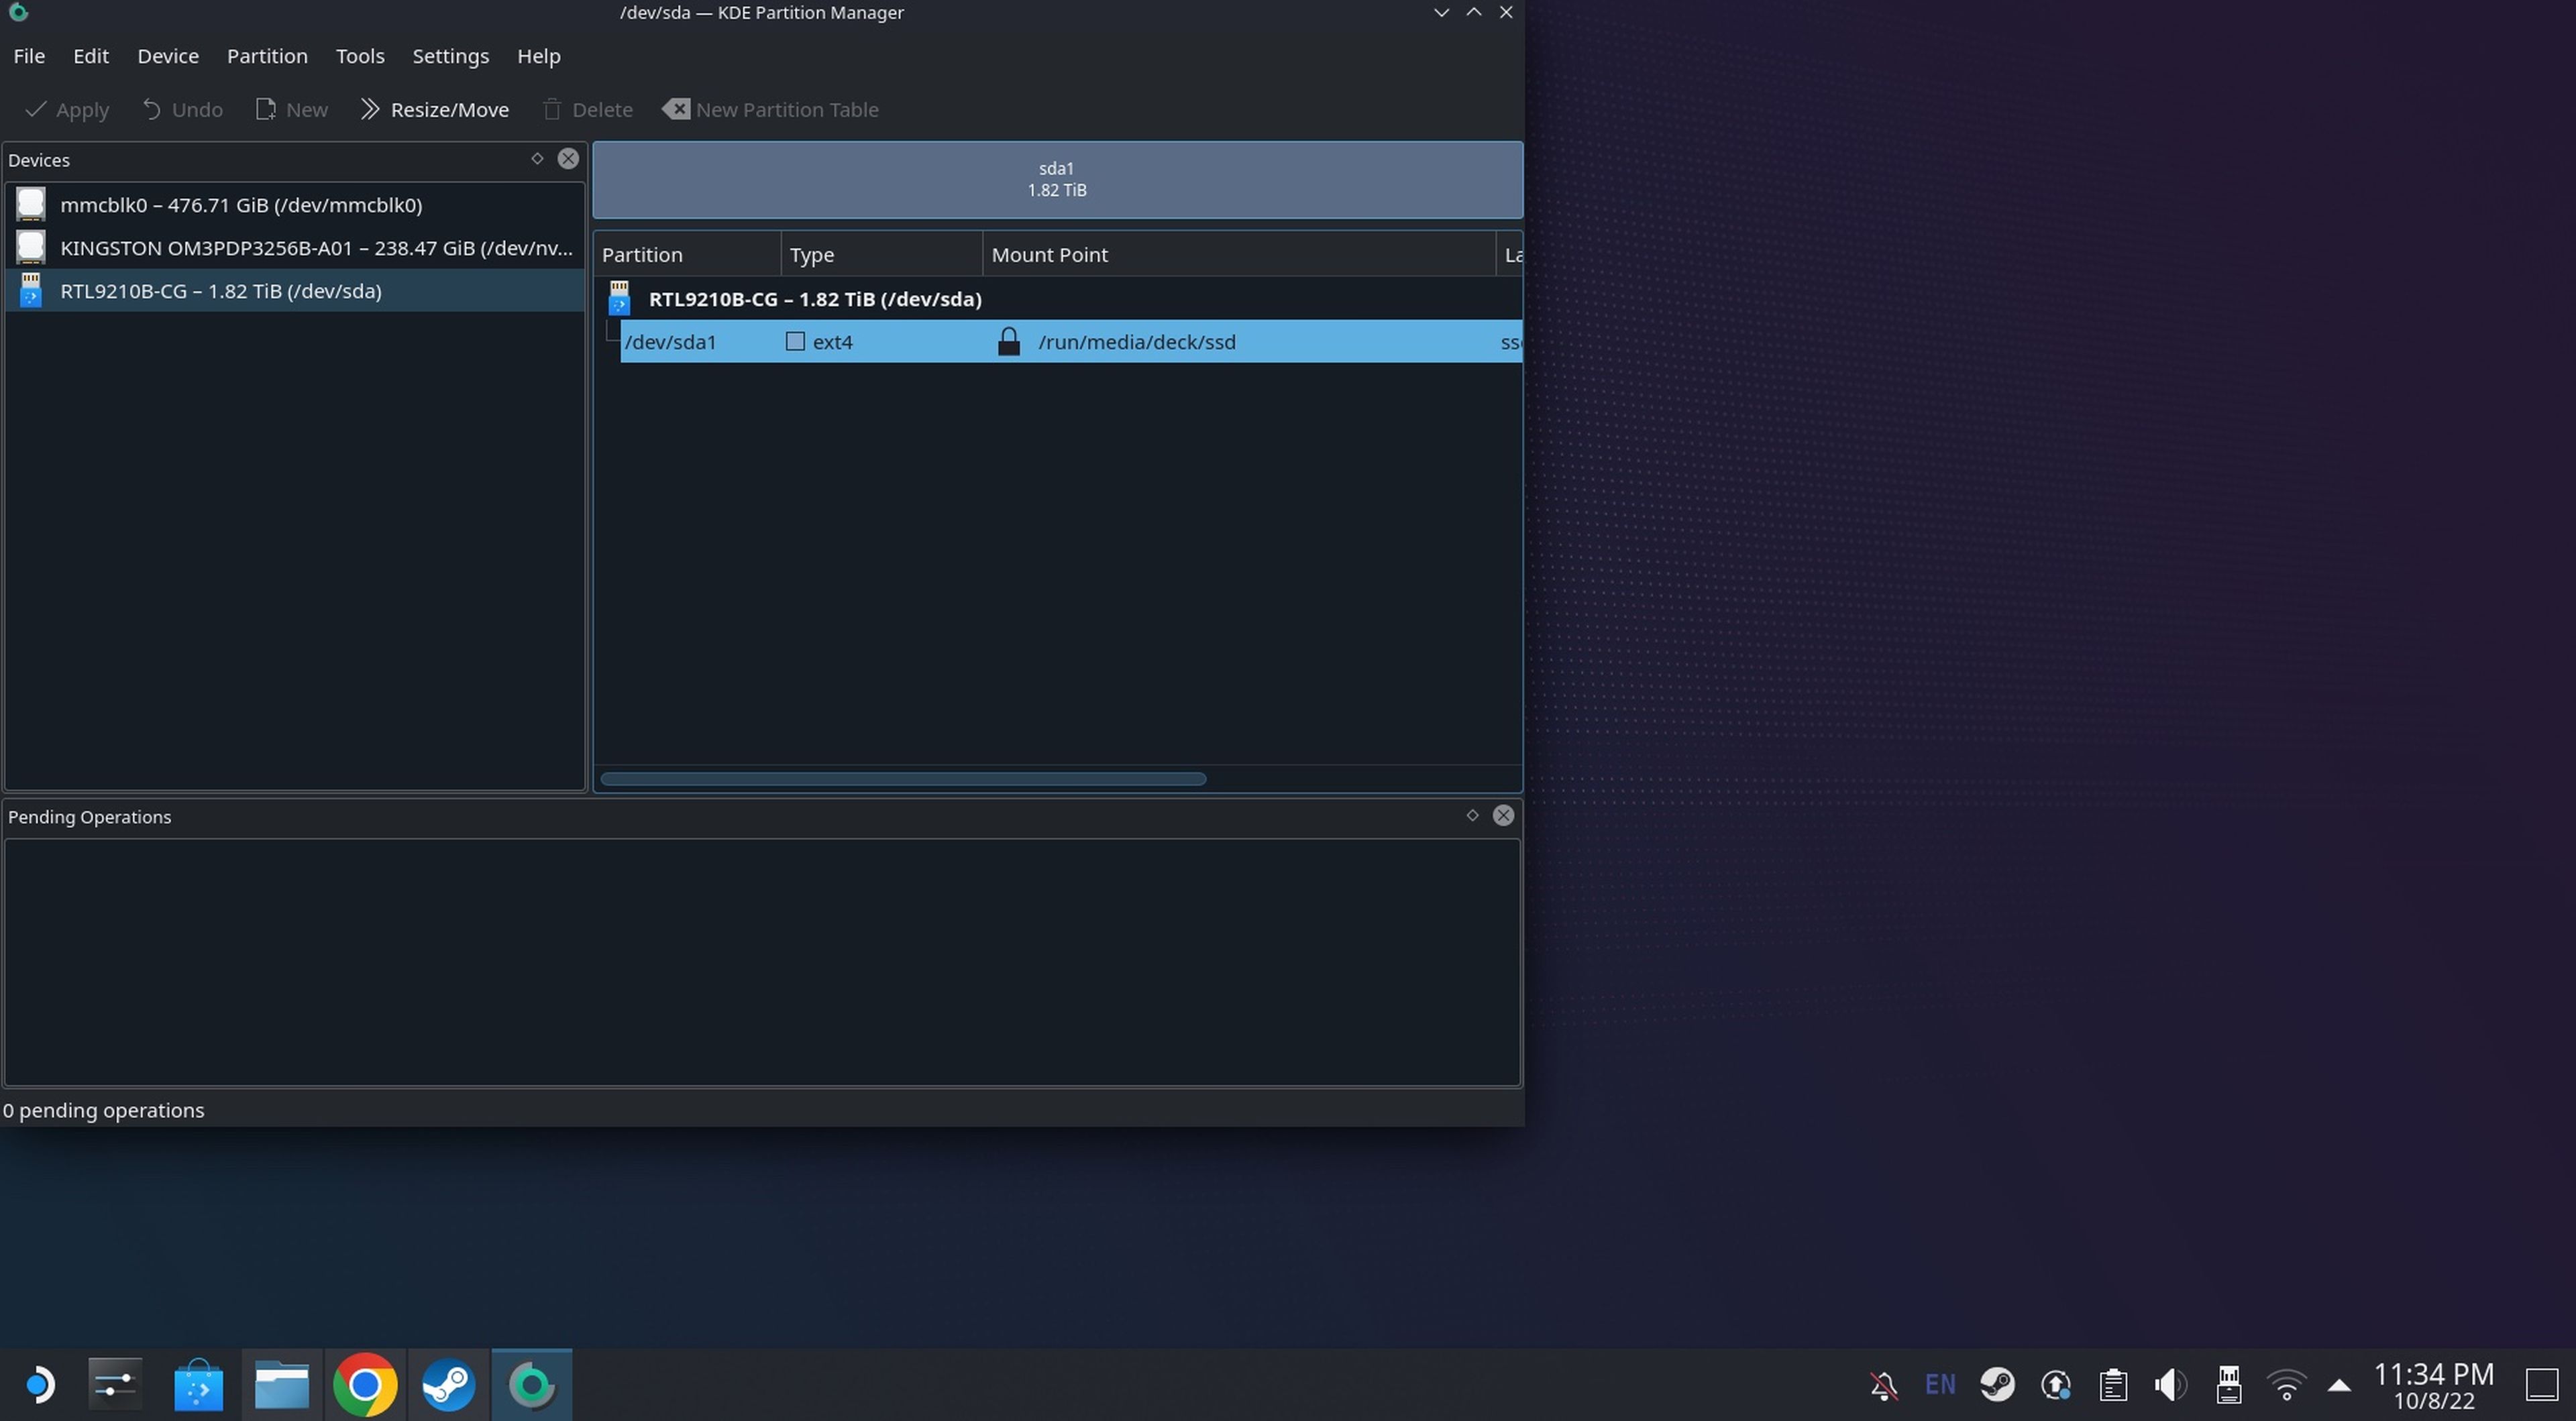 Steam Deck modo escritorio - KDE partition